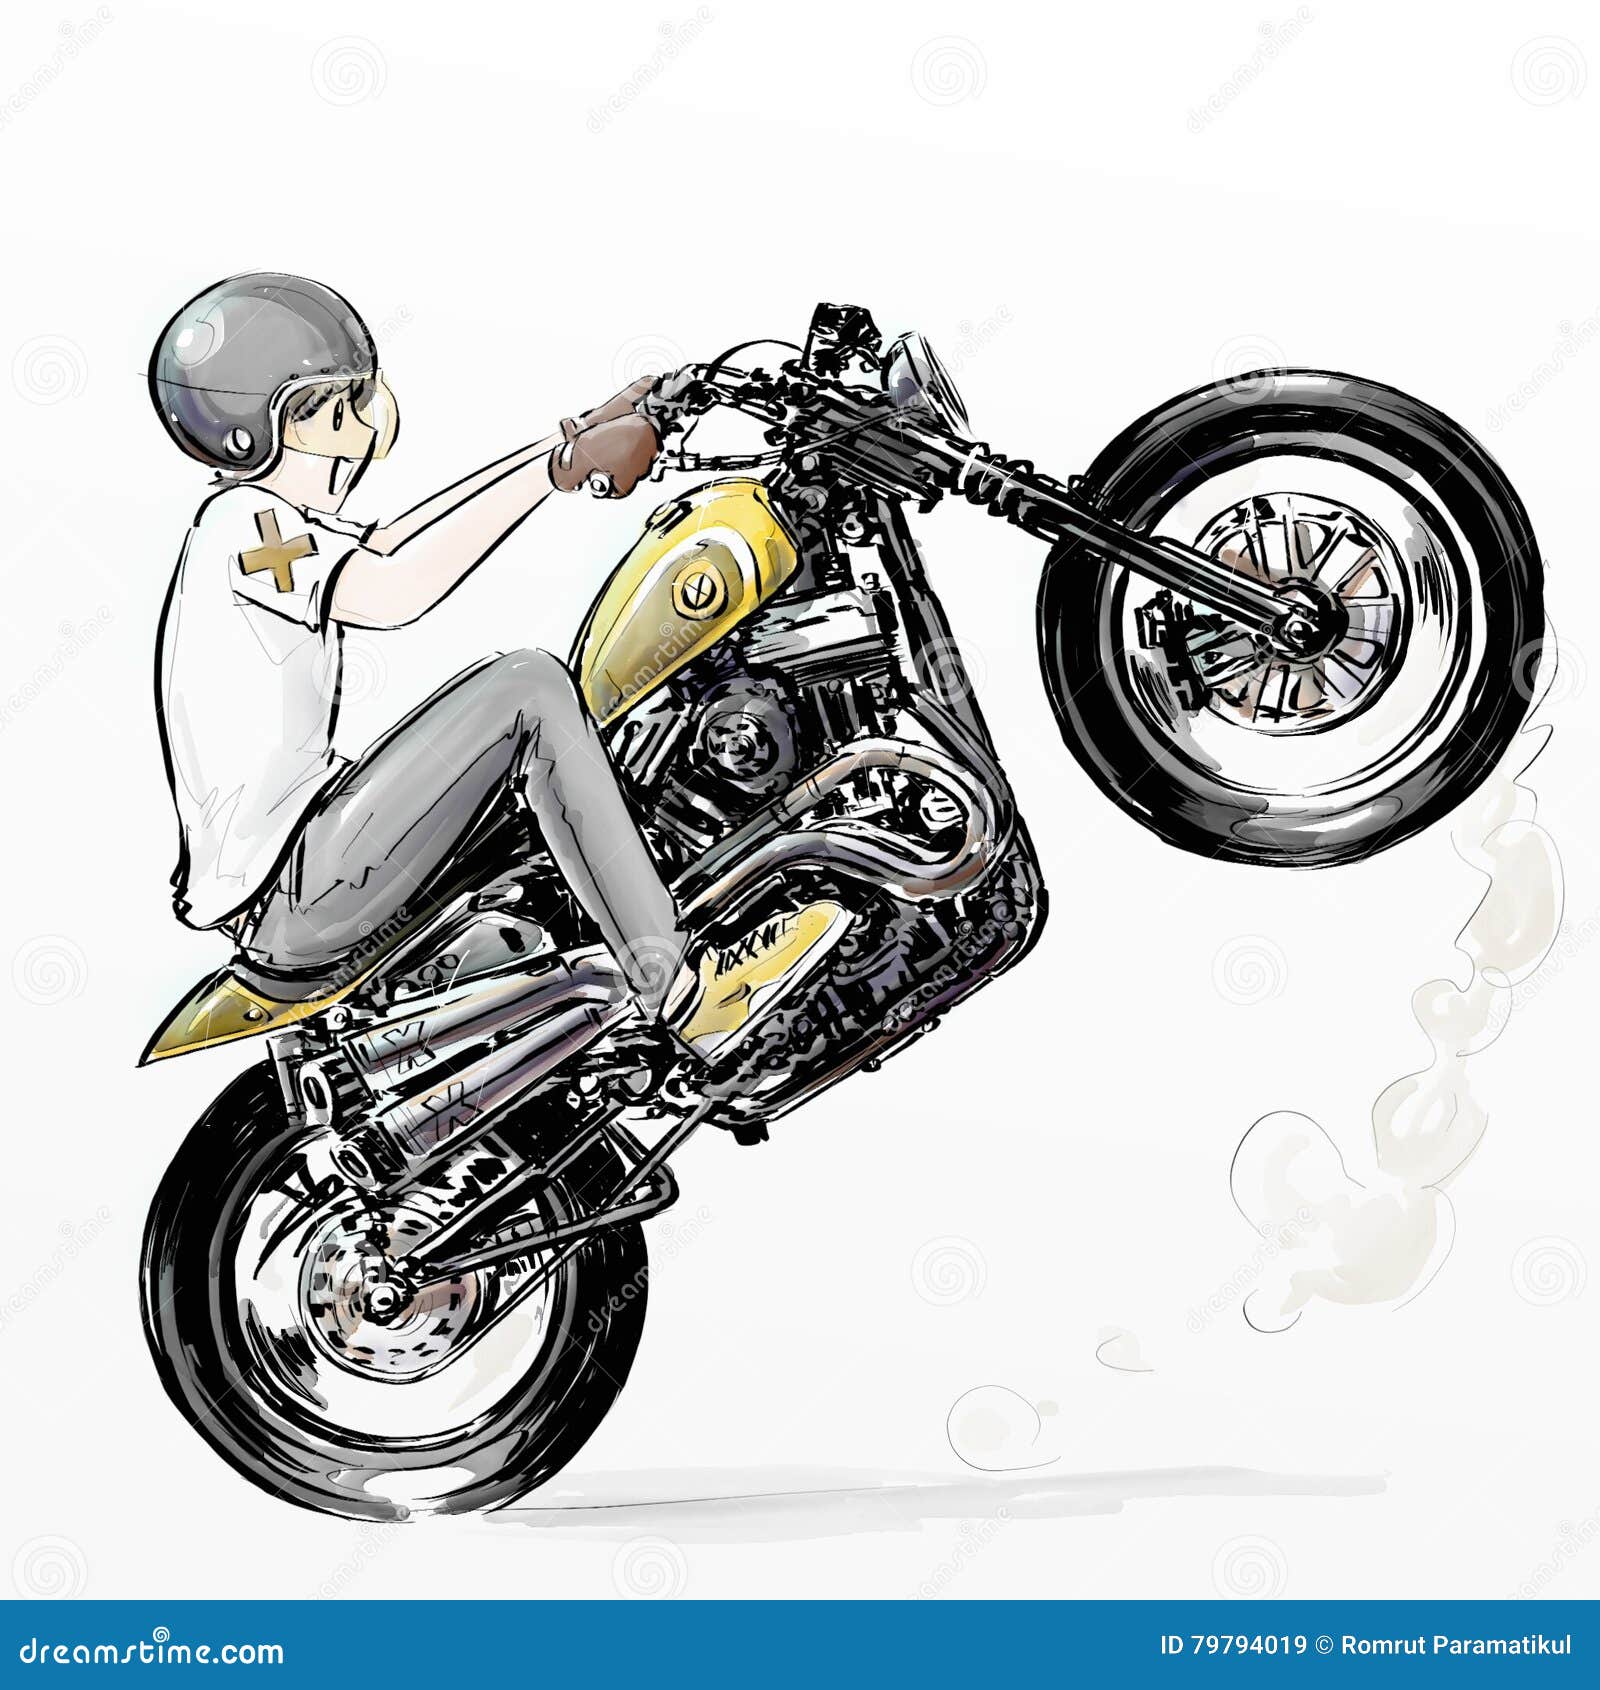 Mão De Desenho Animado Desenhado Equitação Motocicleta Menino